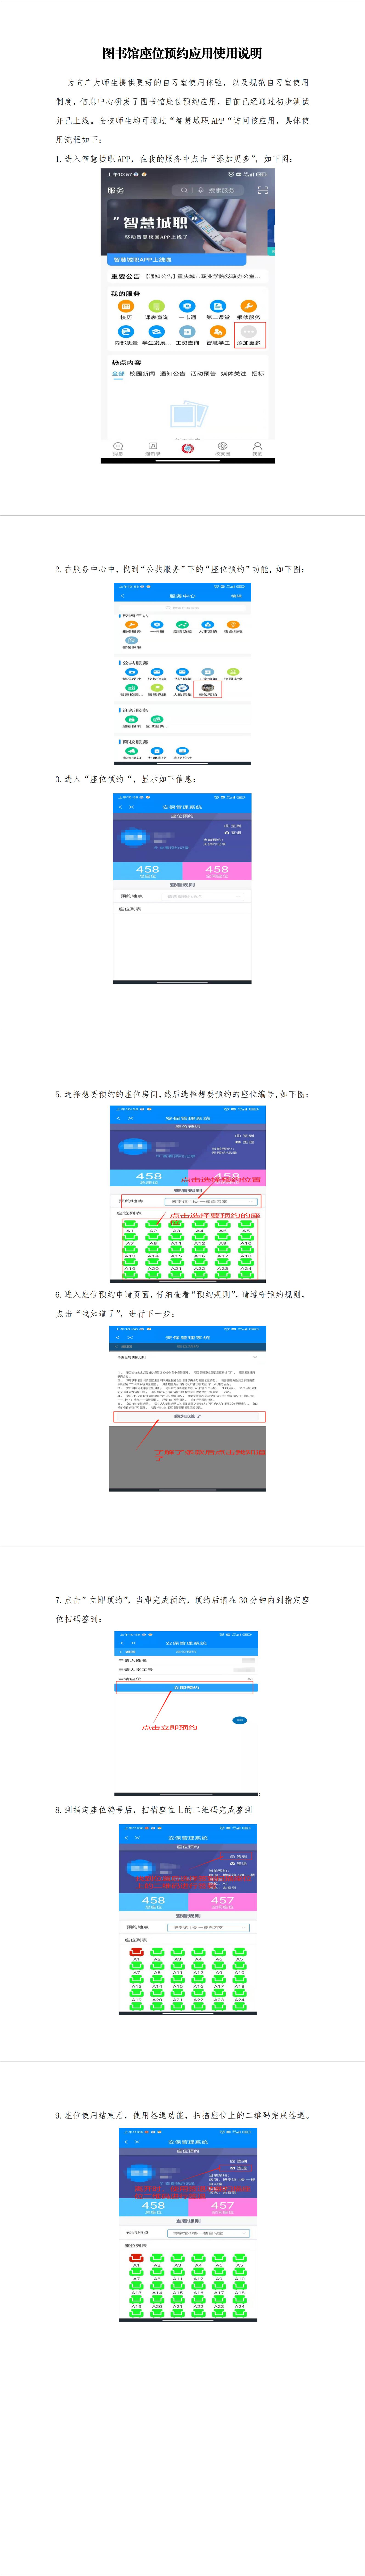 重庆城市职业学院《图书馆座位预约应用使用说明》(1).jpg